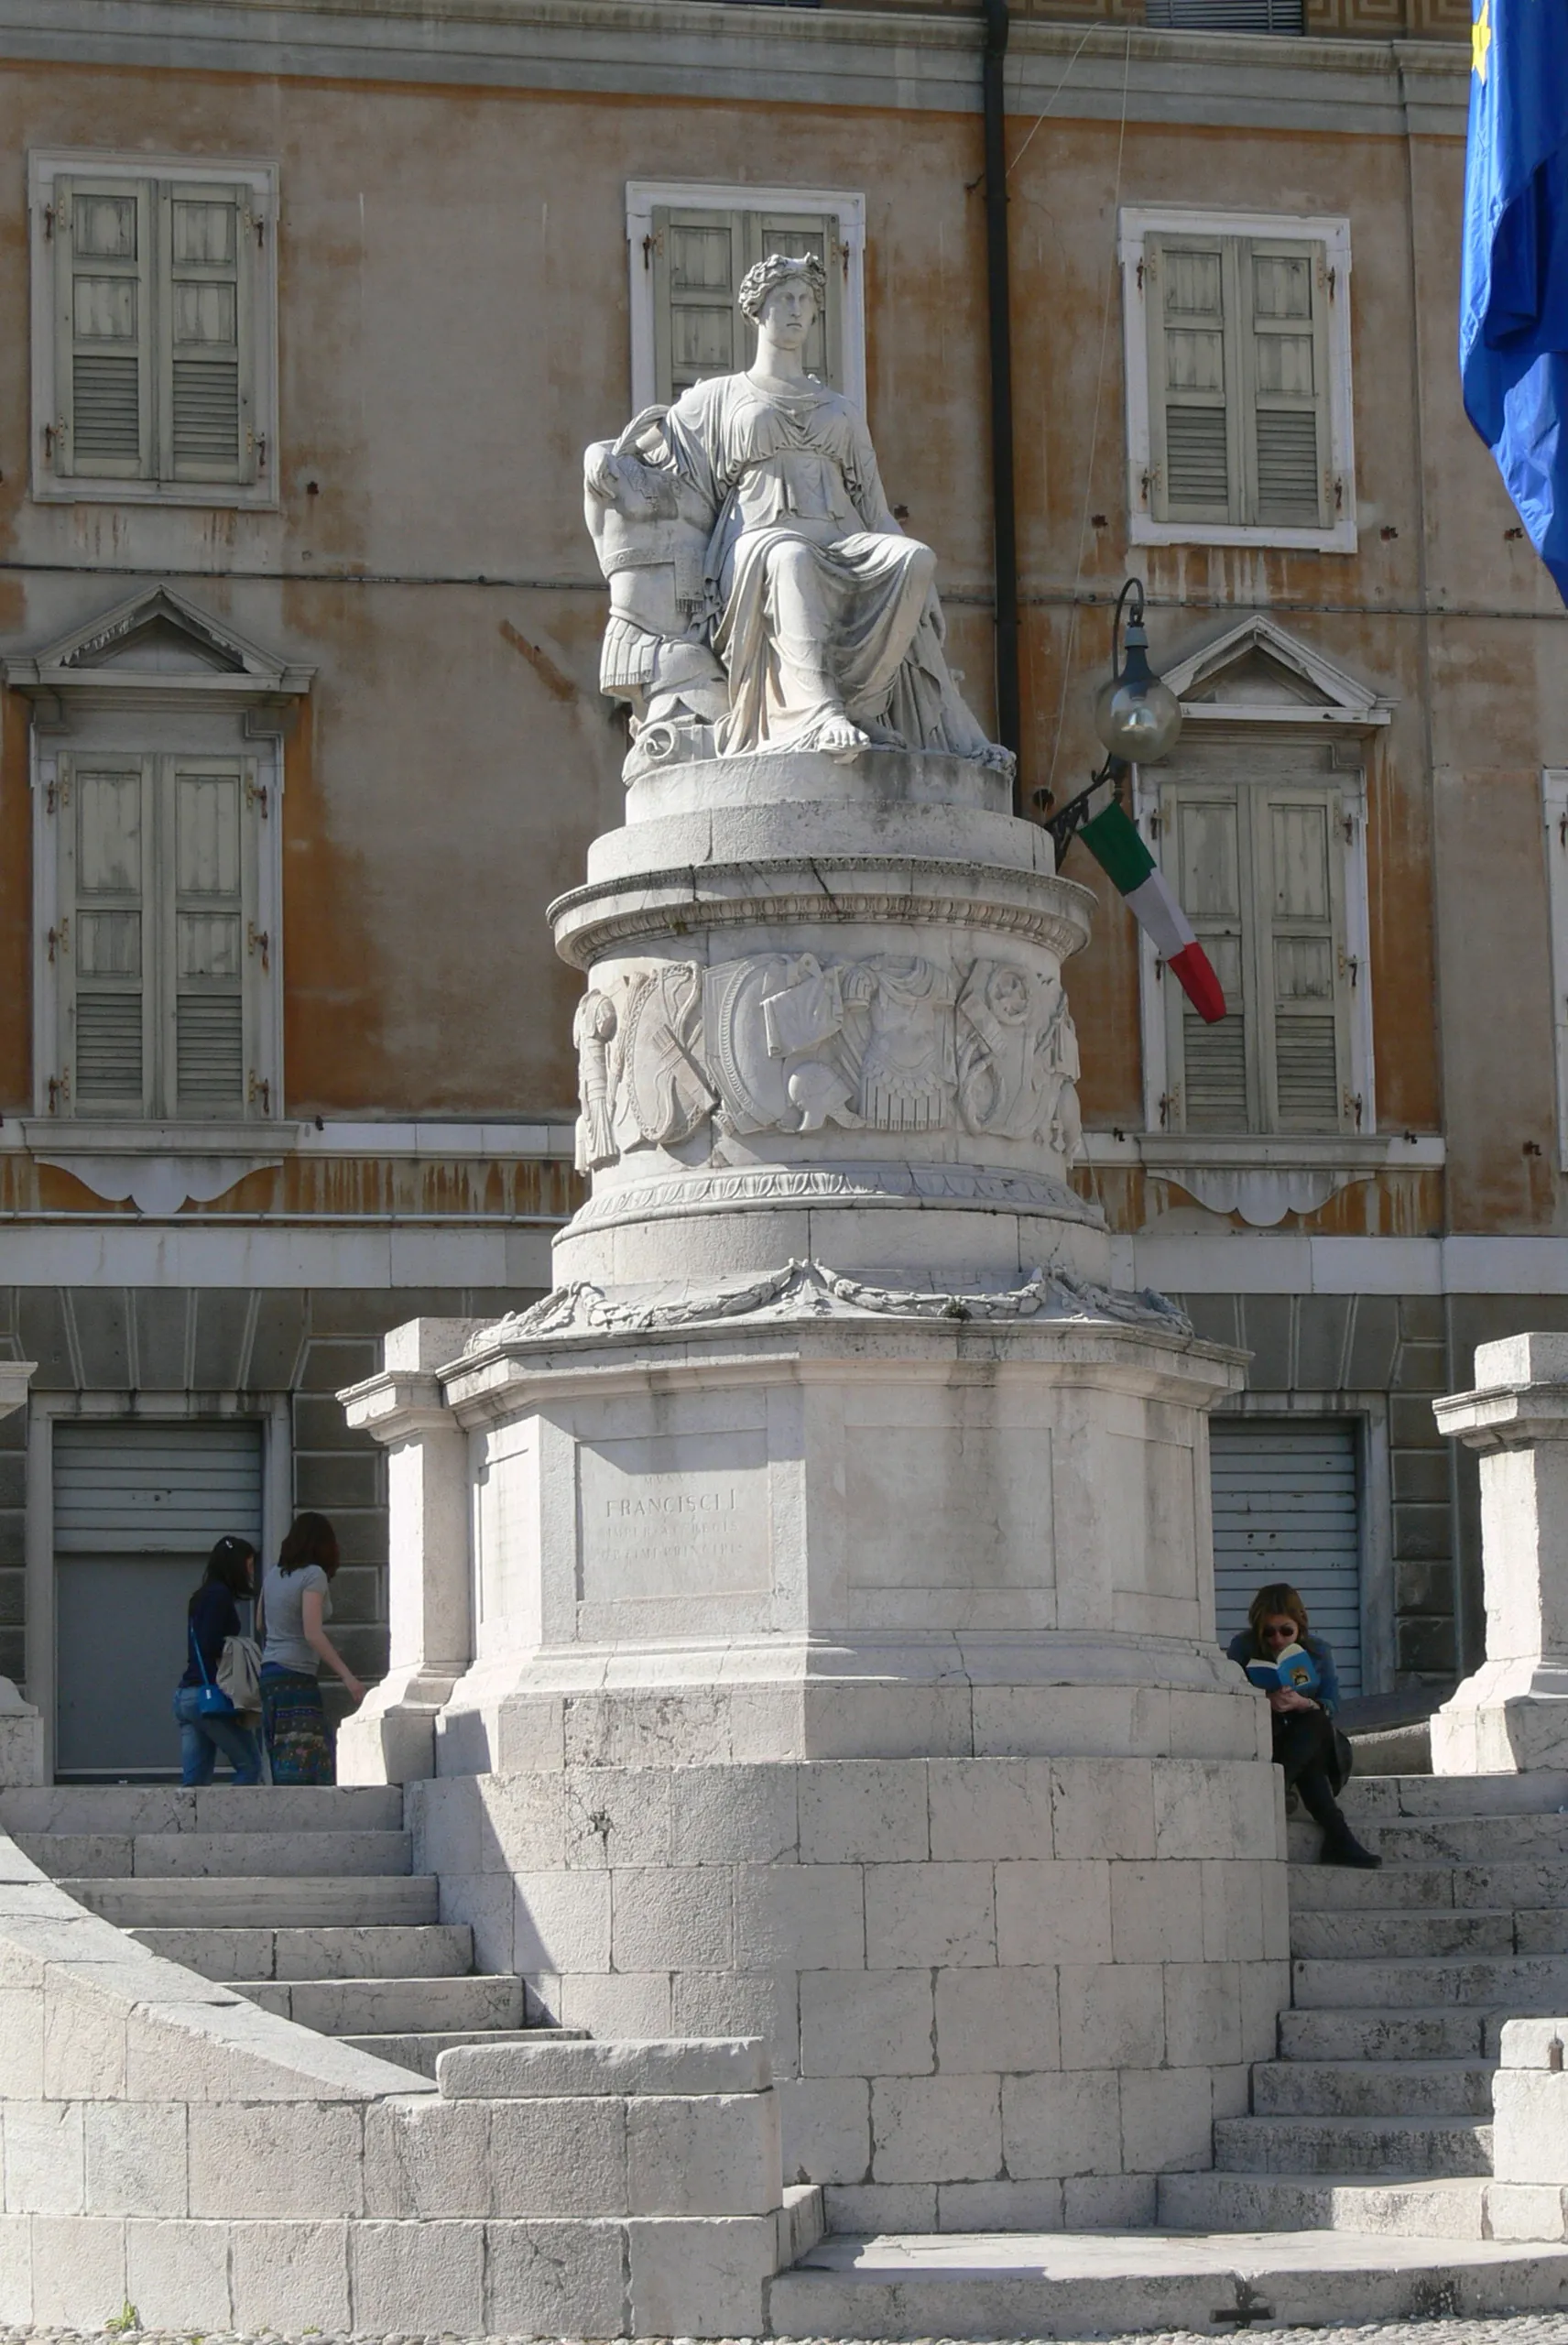 Obrázek Friuli-Venezia Giulia